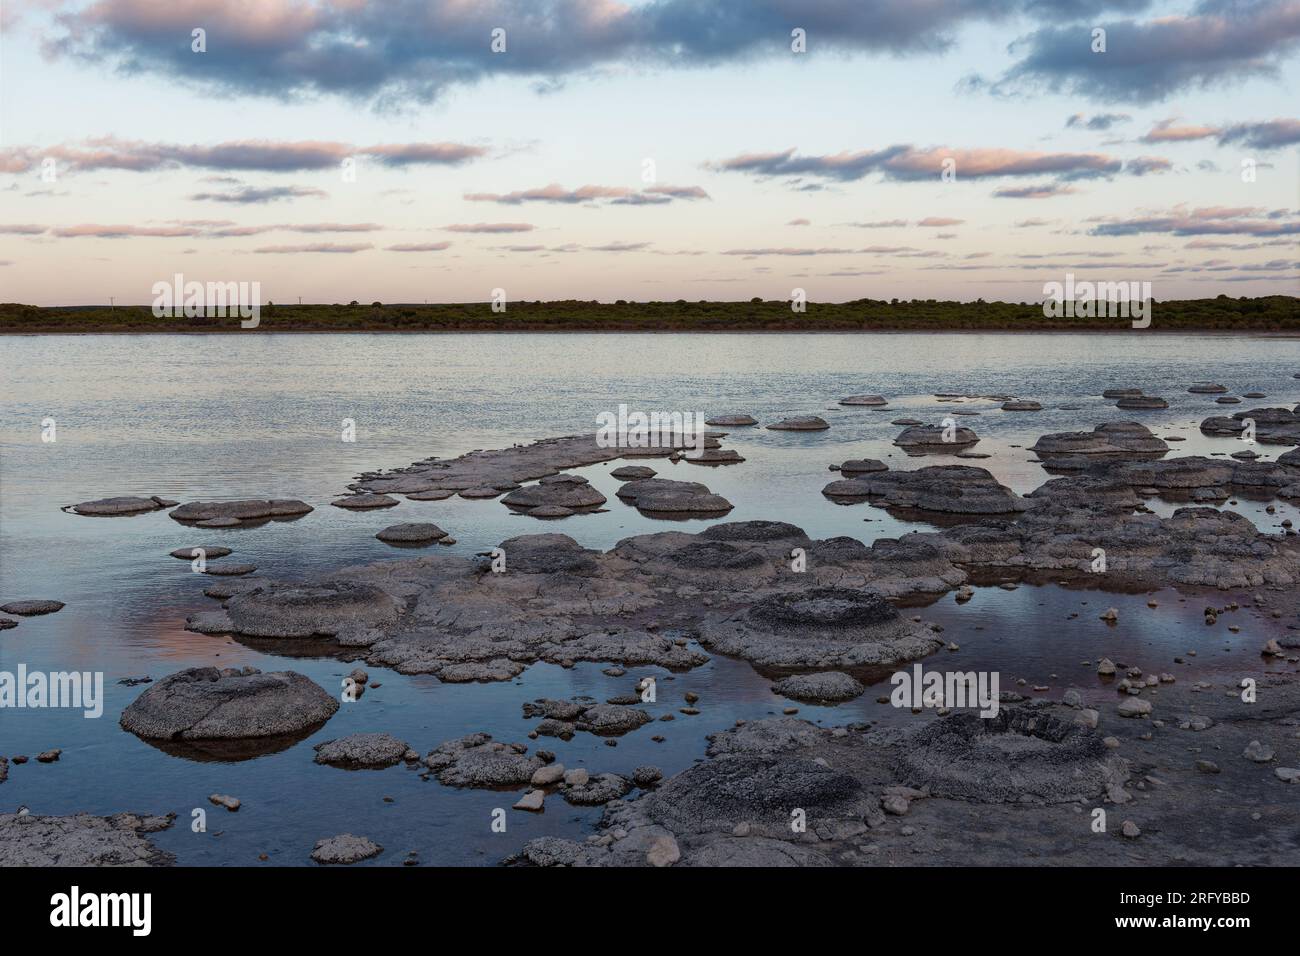 Lac Thetis - lac côtier salin en Australie occidentale près de la ville de Cervantes, sur une chaussée calcaire quaternaire, stromatolites marines vivantes, benthique m Banque D'Images